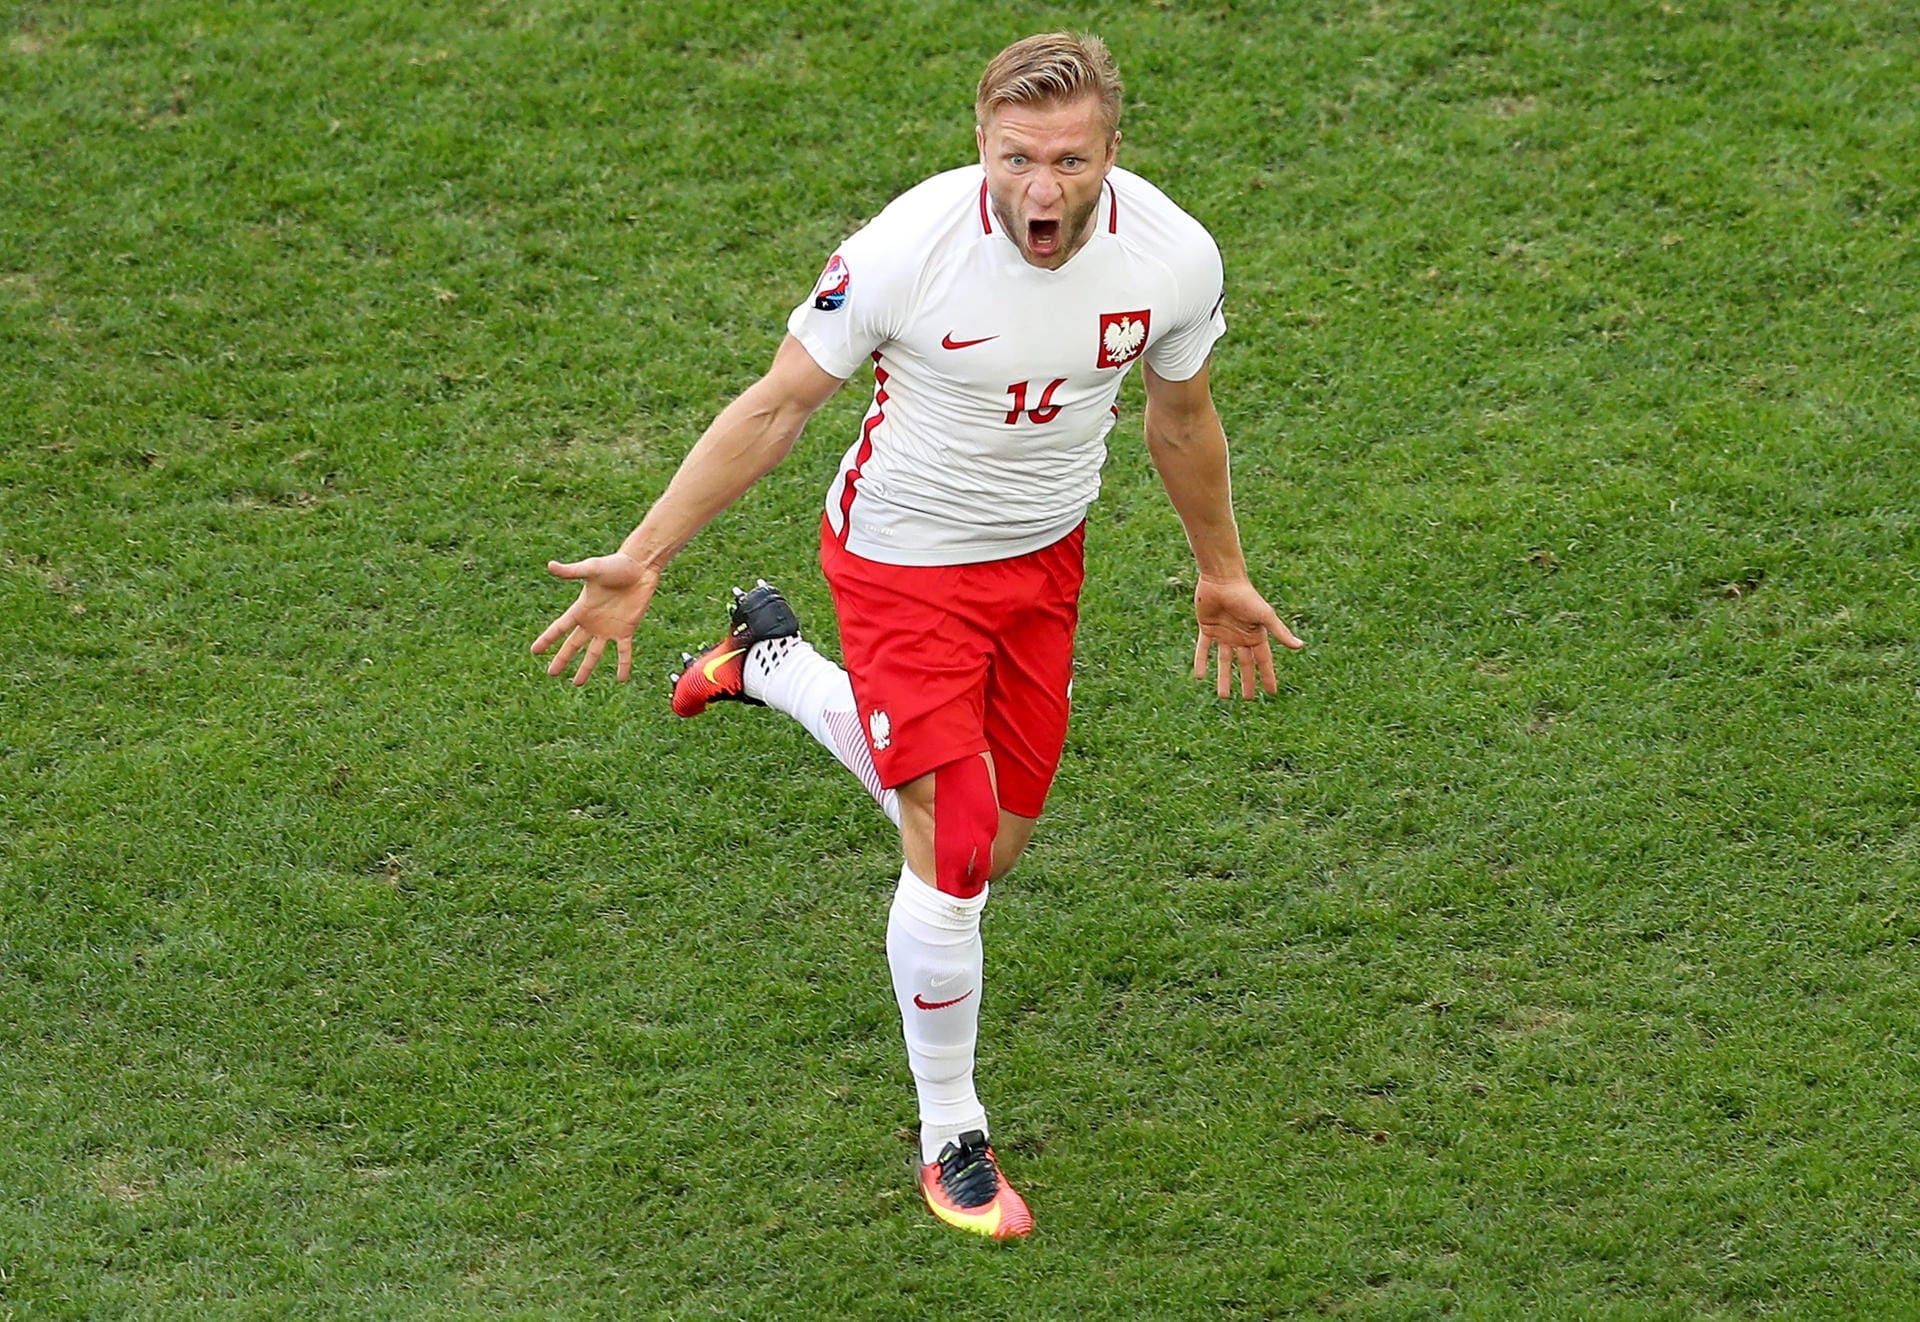 Dafür erlöst der eingewechselte Jakub Blaszczykowski das polnische Team mit seinem Siegtreffer zum 1:0.